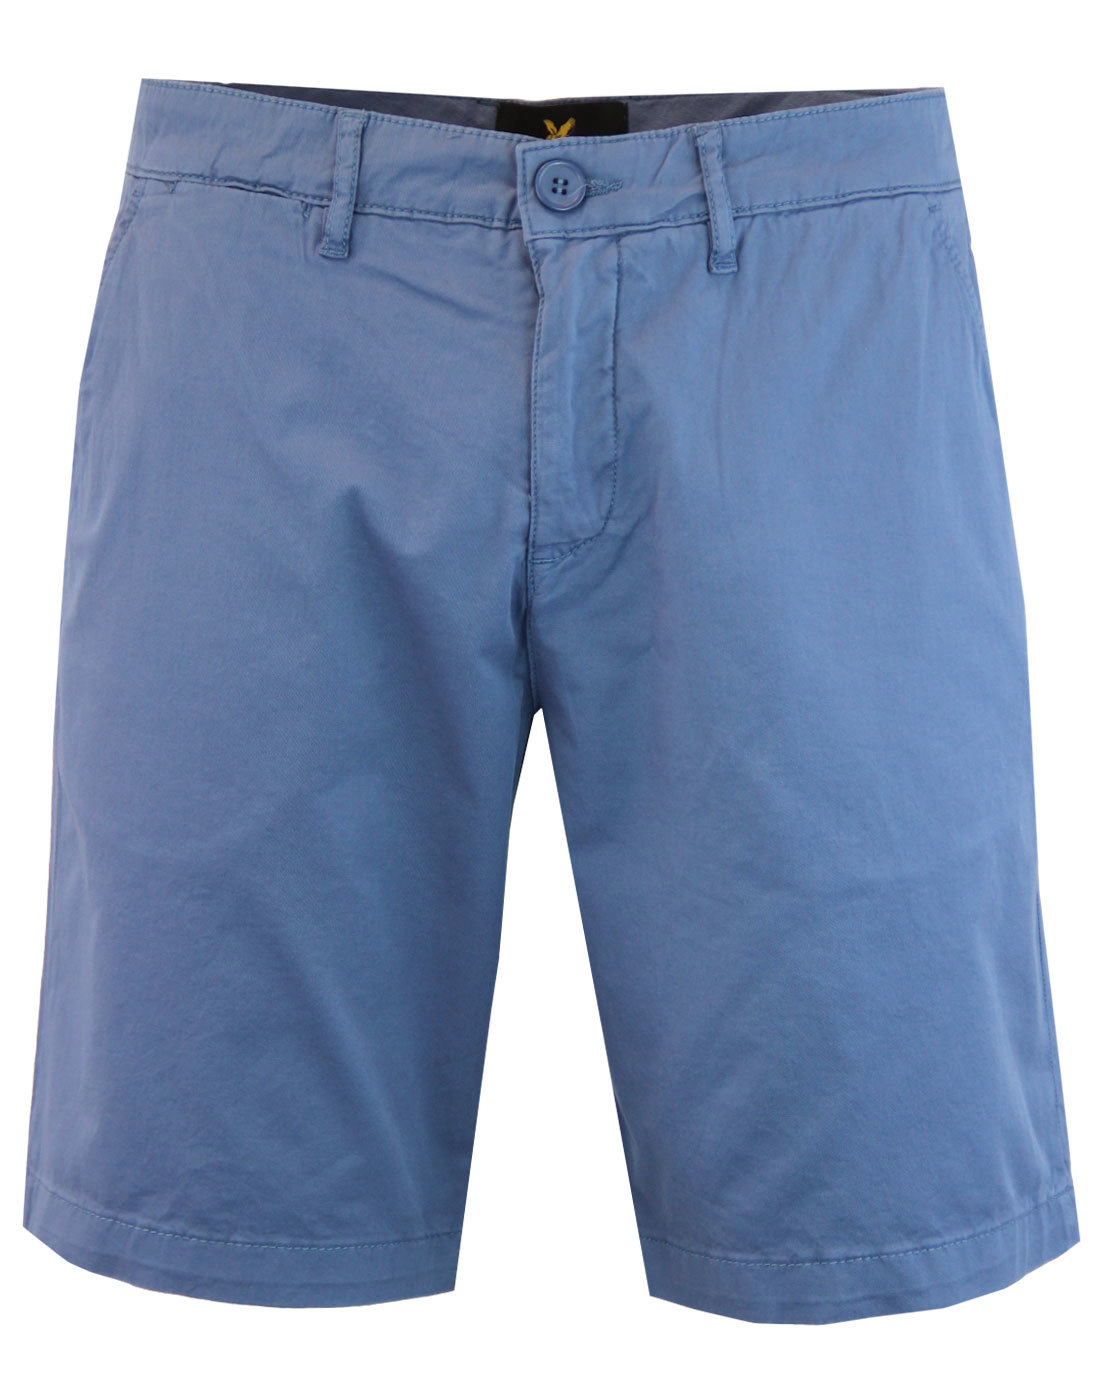 LYLE & SCOTT Men's Retro Garment Dye Shorts in Moonlight Blue